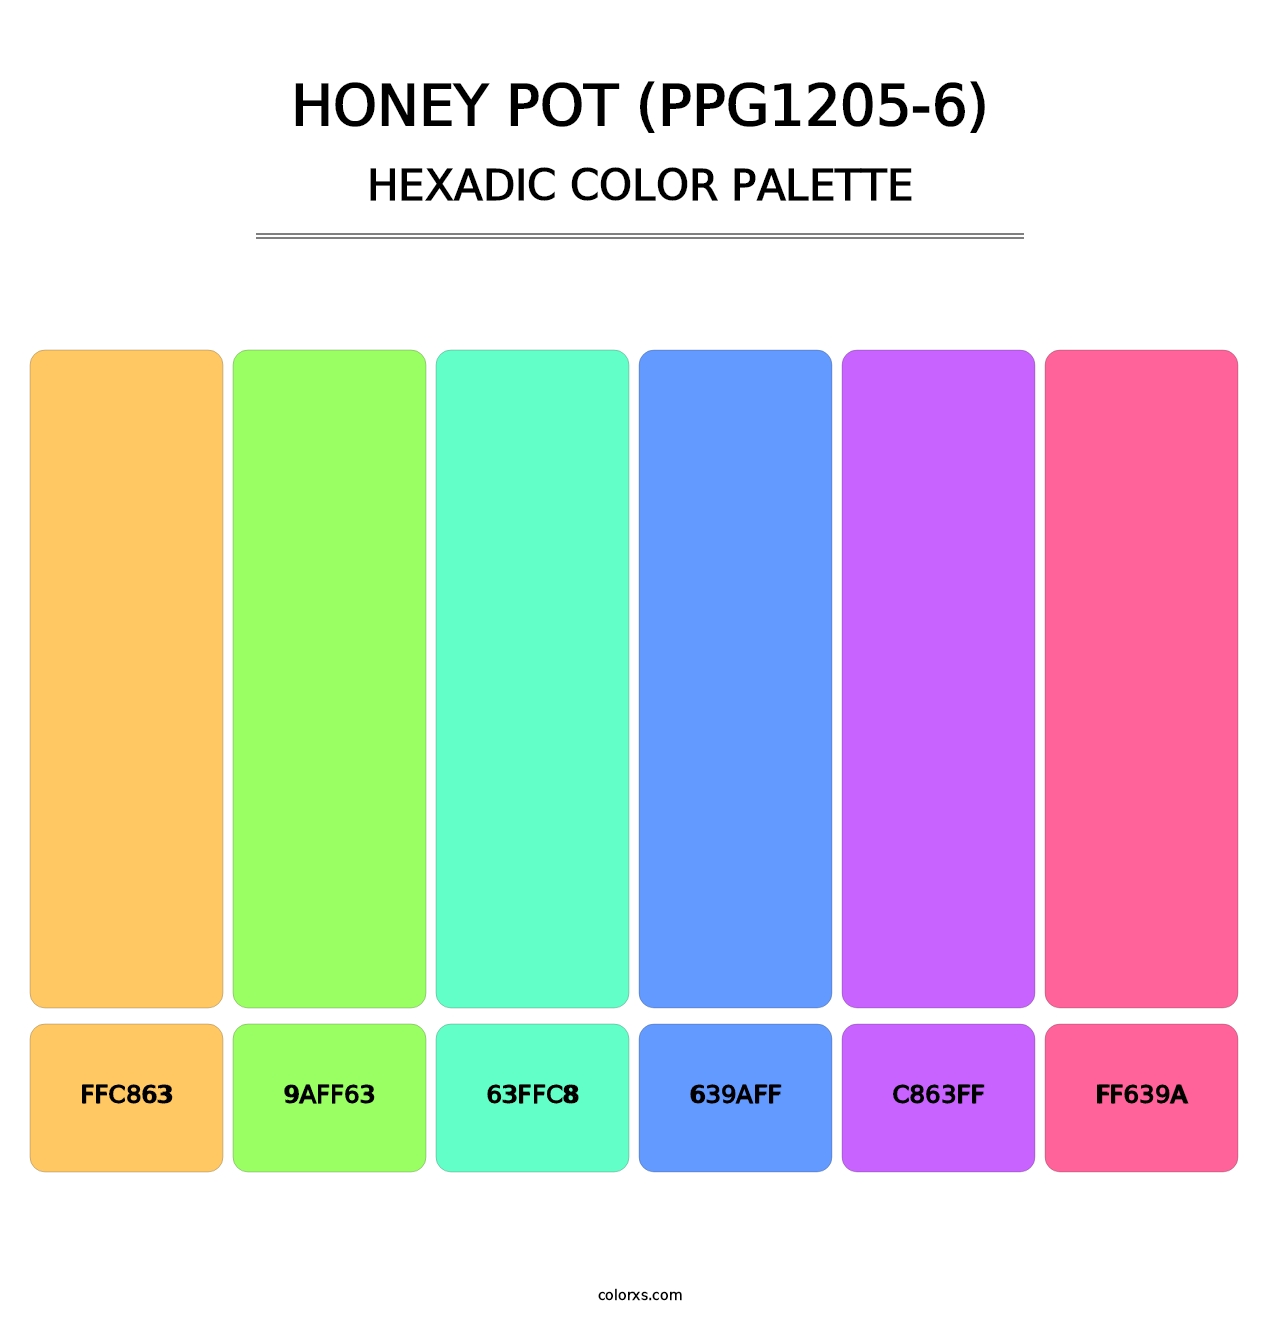 Honey Pot (PPG1205-6) - Hexadic Color Palette